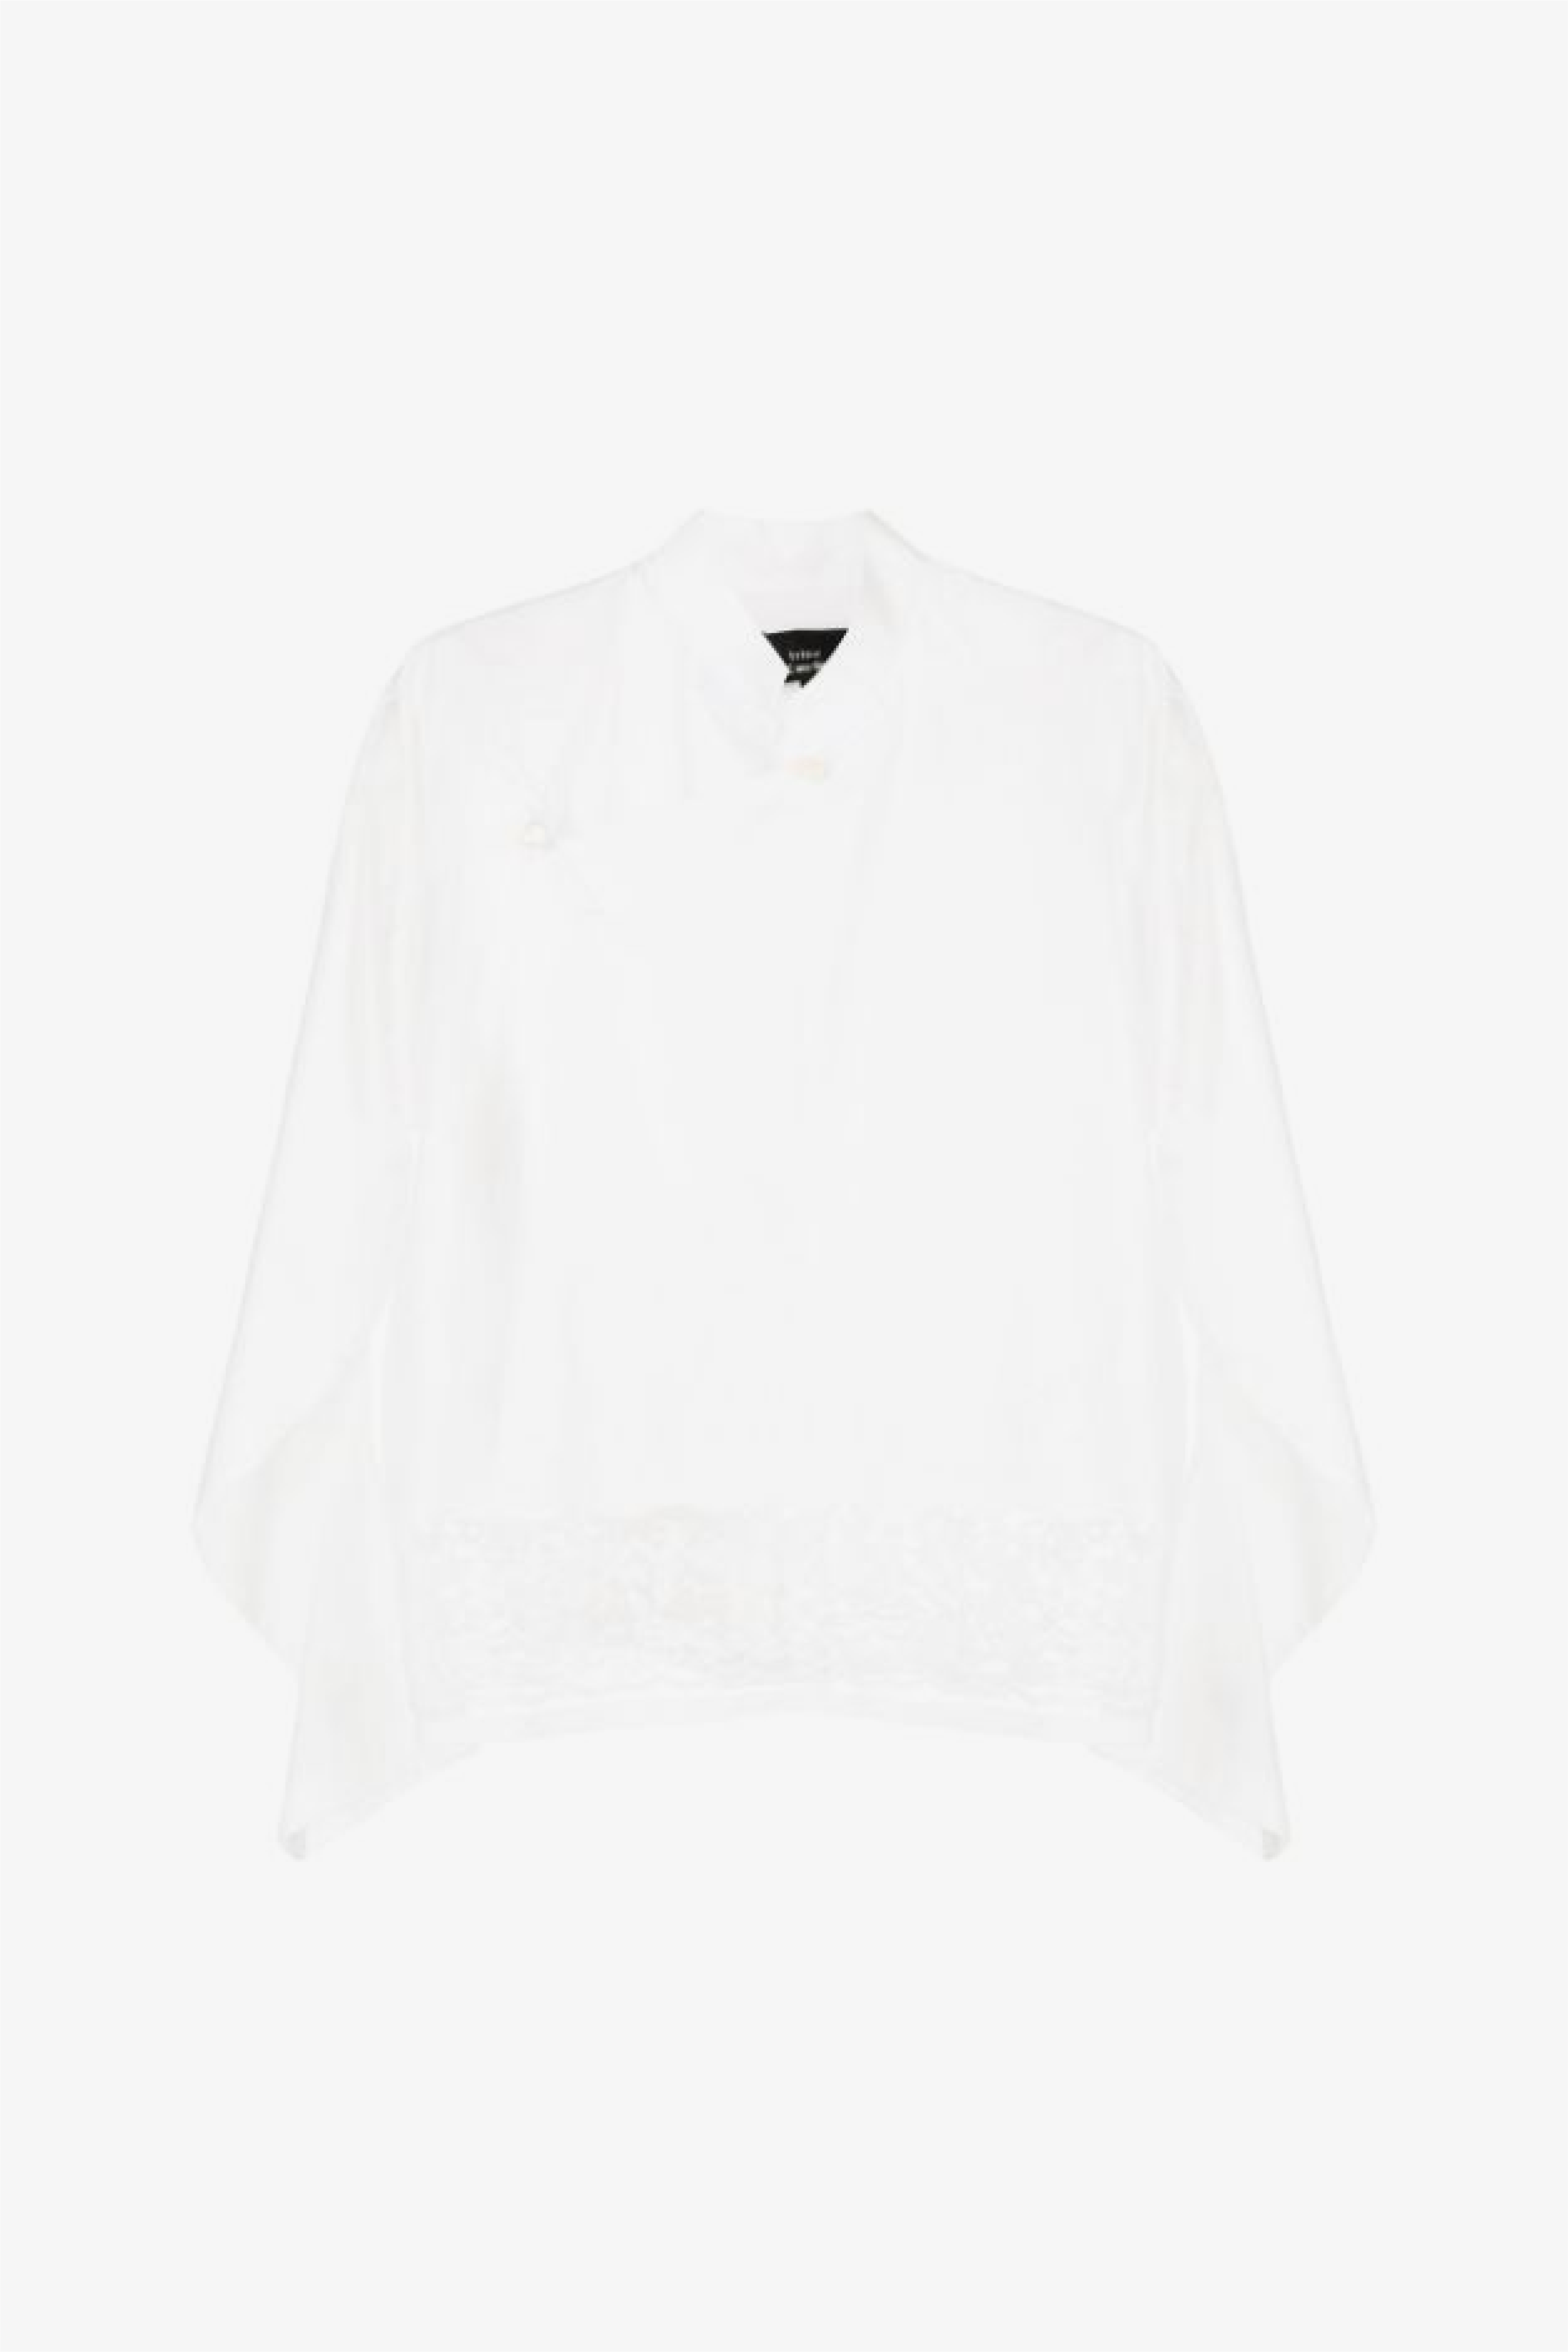 Selectshop FRAME - COMME DES GARÇONS TRICOT Blouse Shirts Dubai